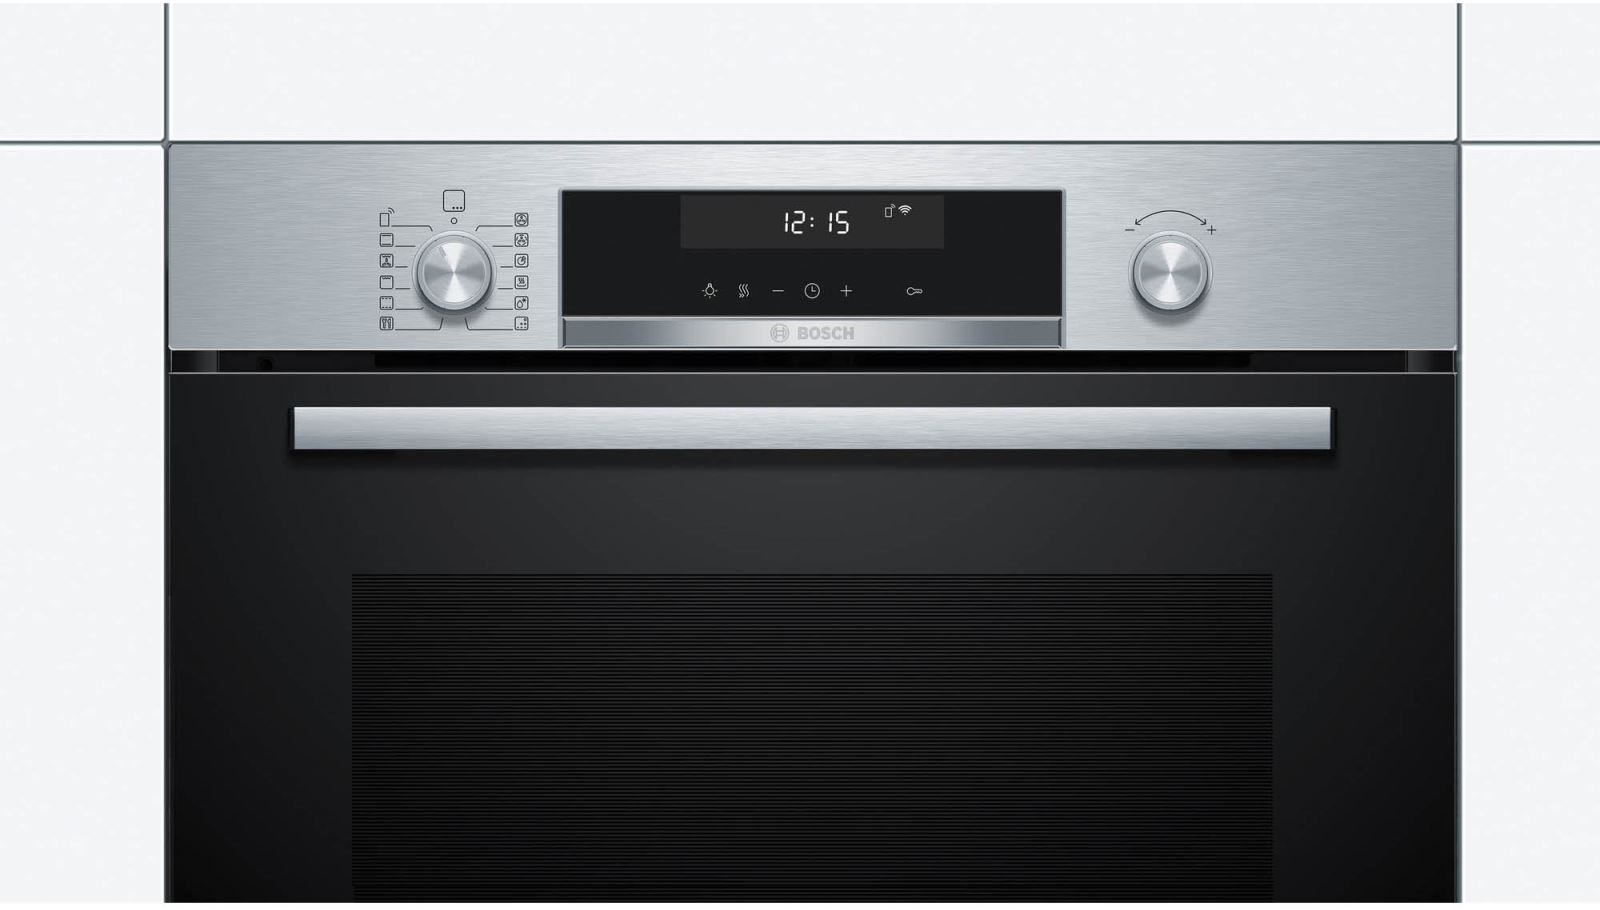 Lò nướng Bosch HBG5585S6B serie 6 với thiết kế màu đen tuyền sang trọng tạo thẩm mỹ trong không gian bếp